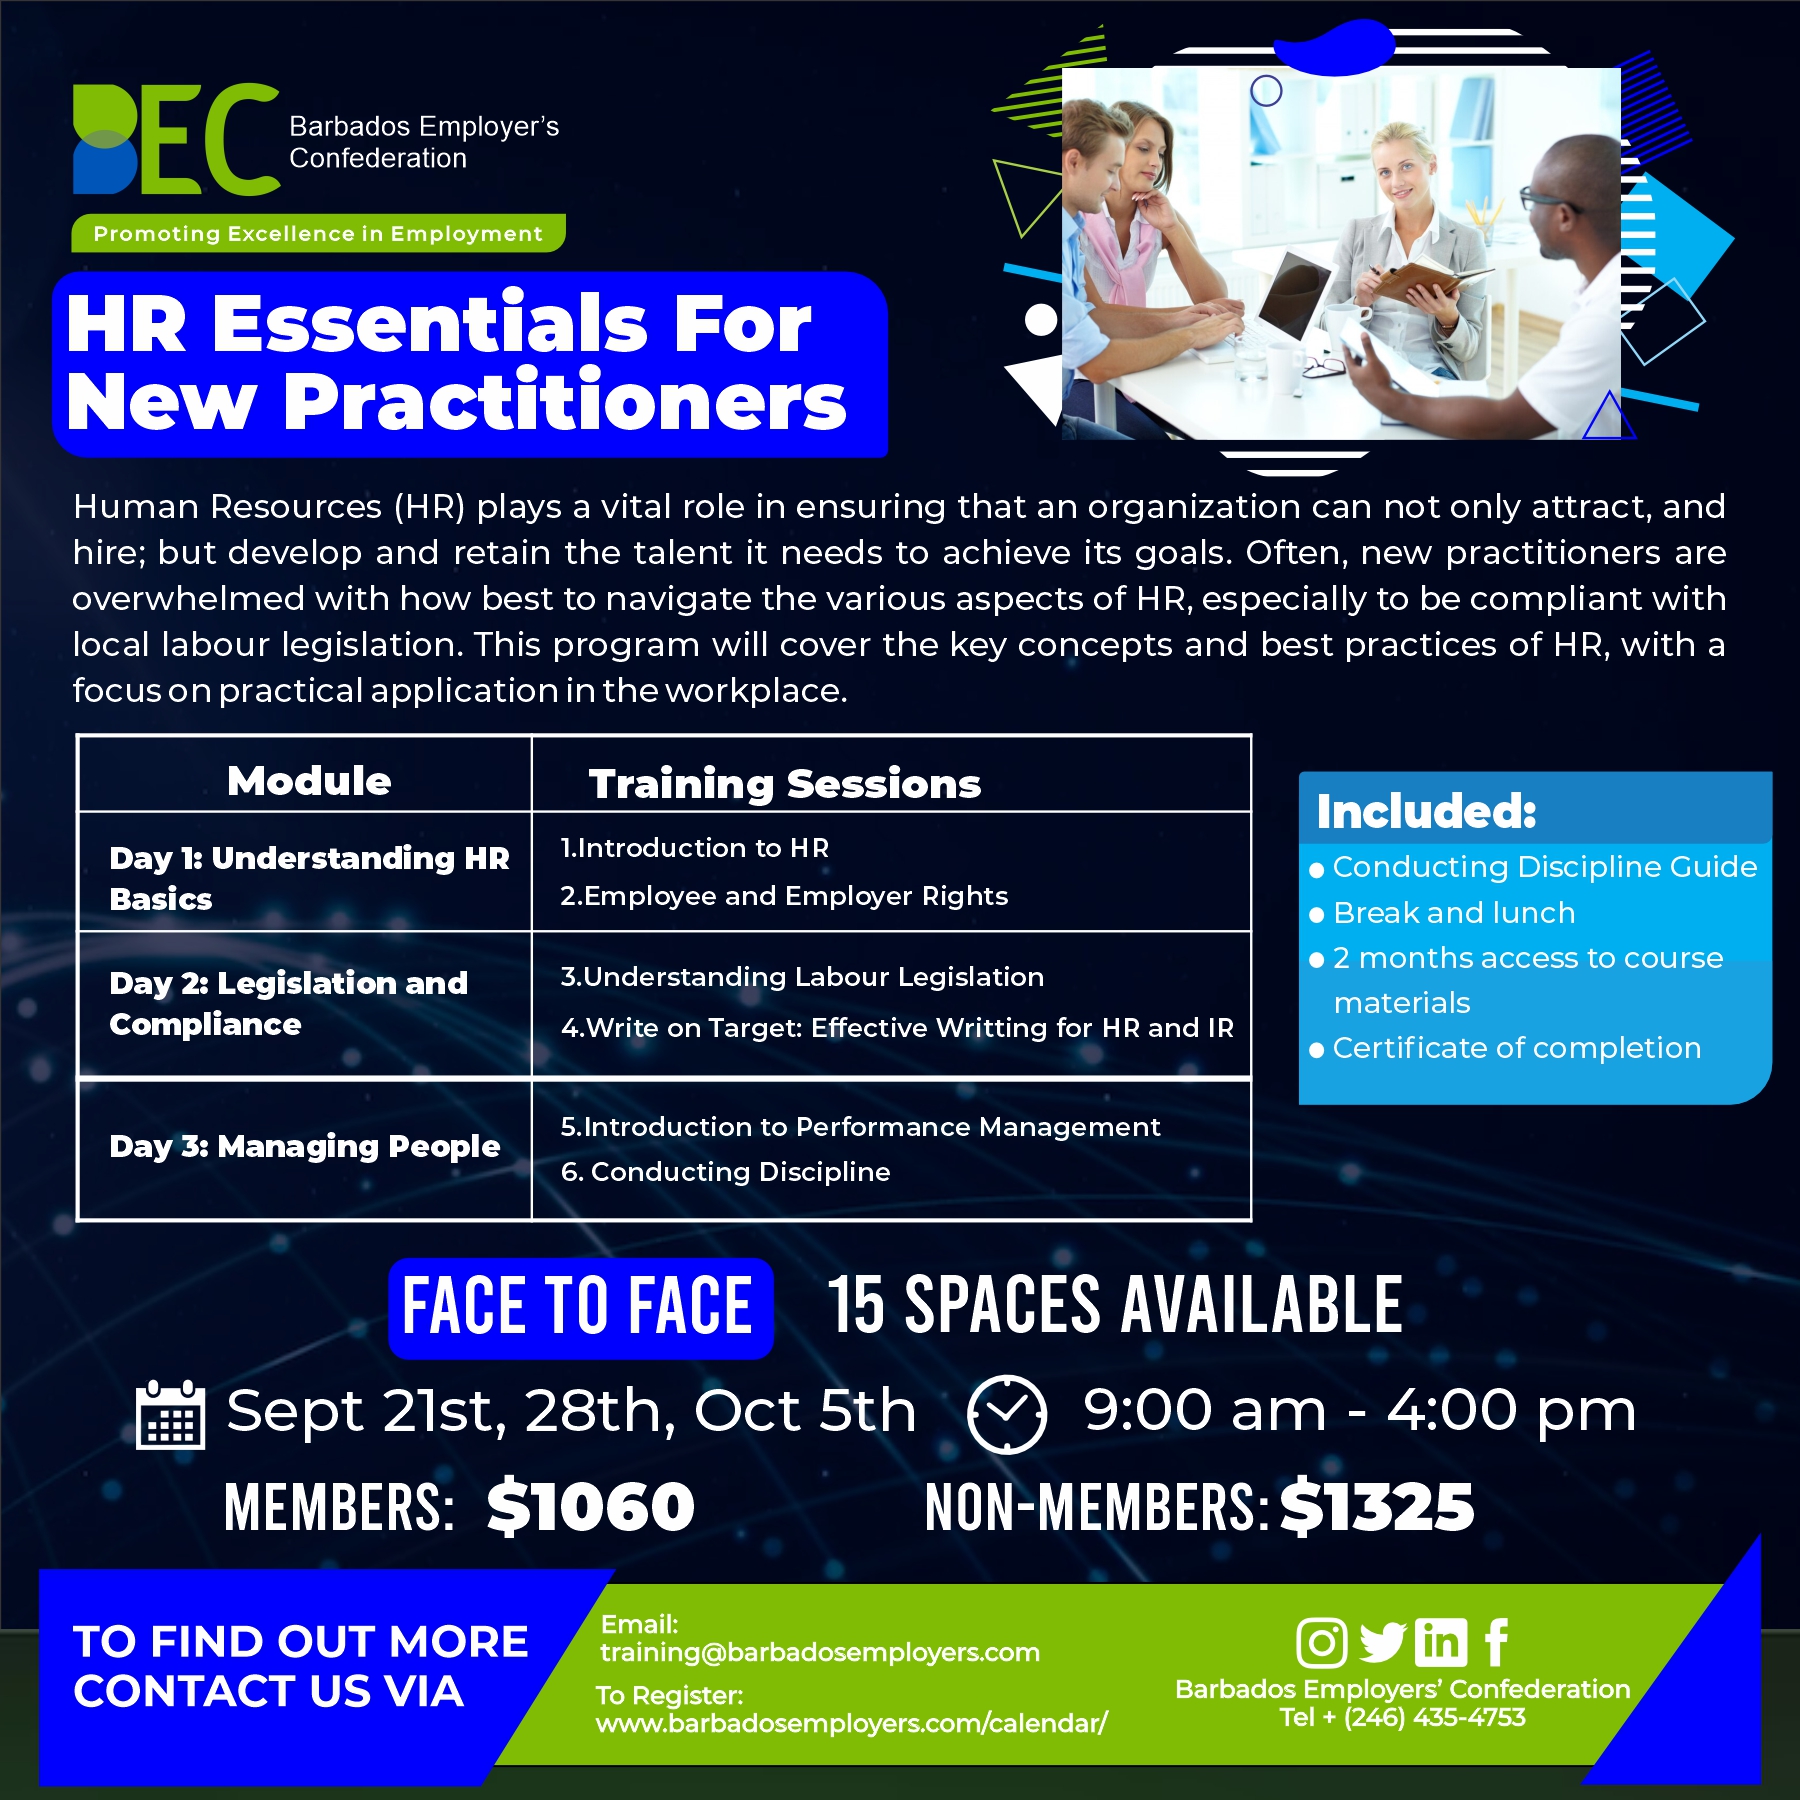 BEC HR Essentials Flyer